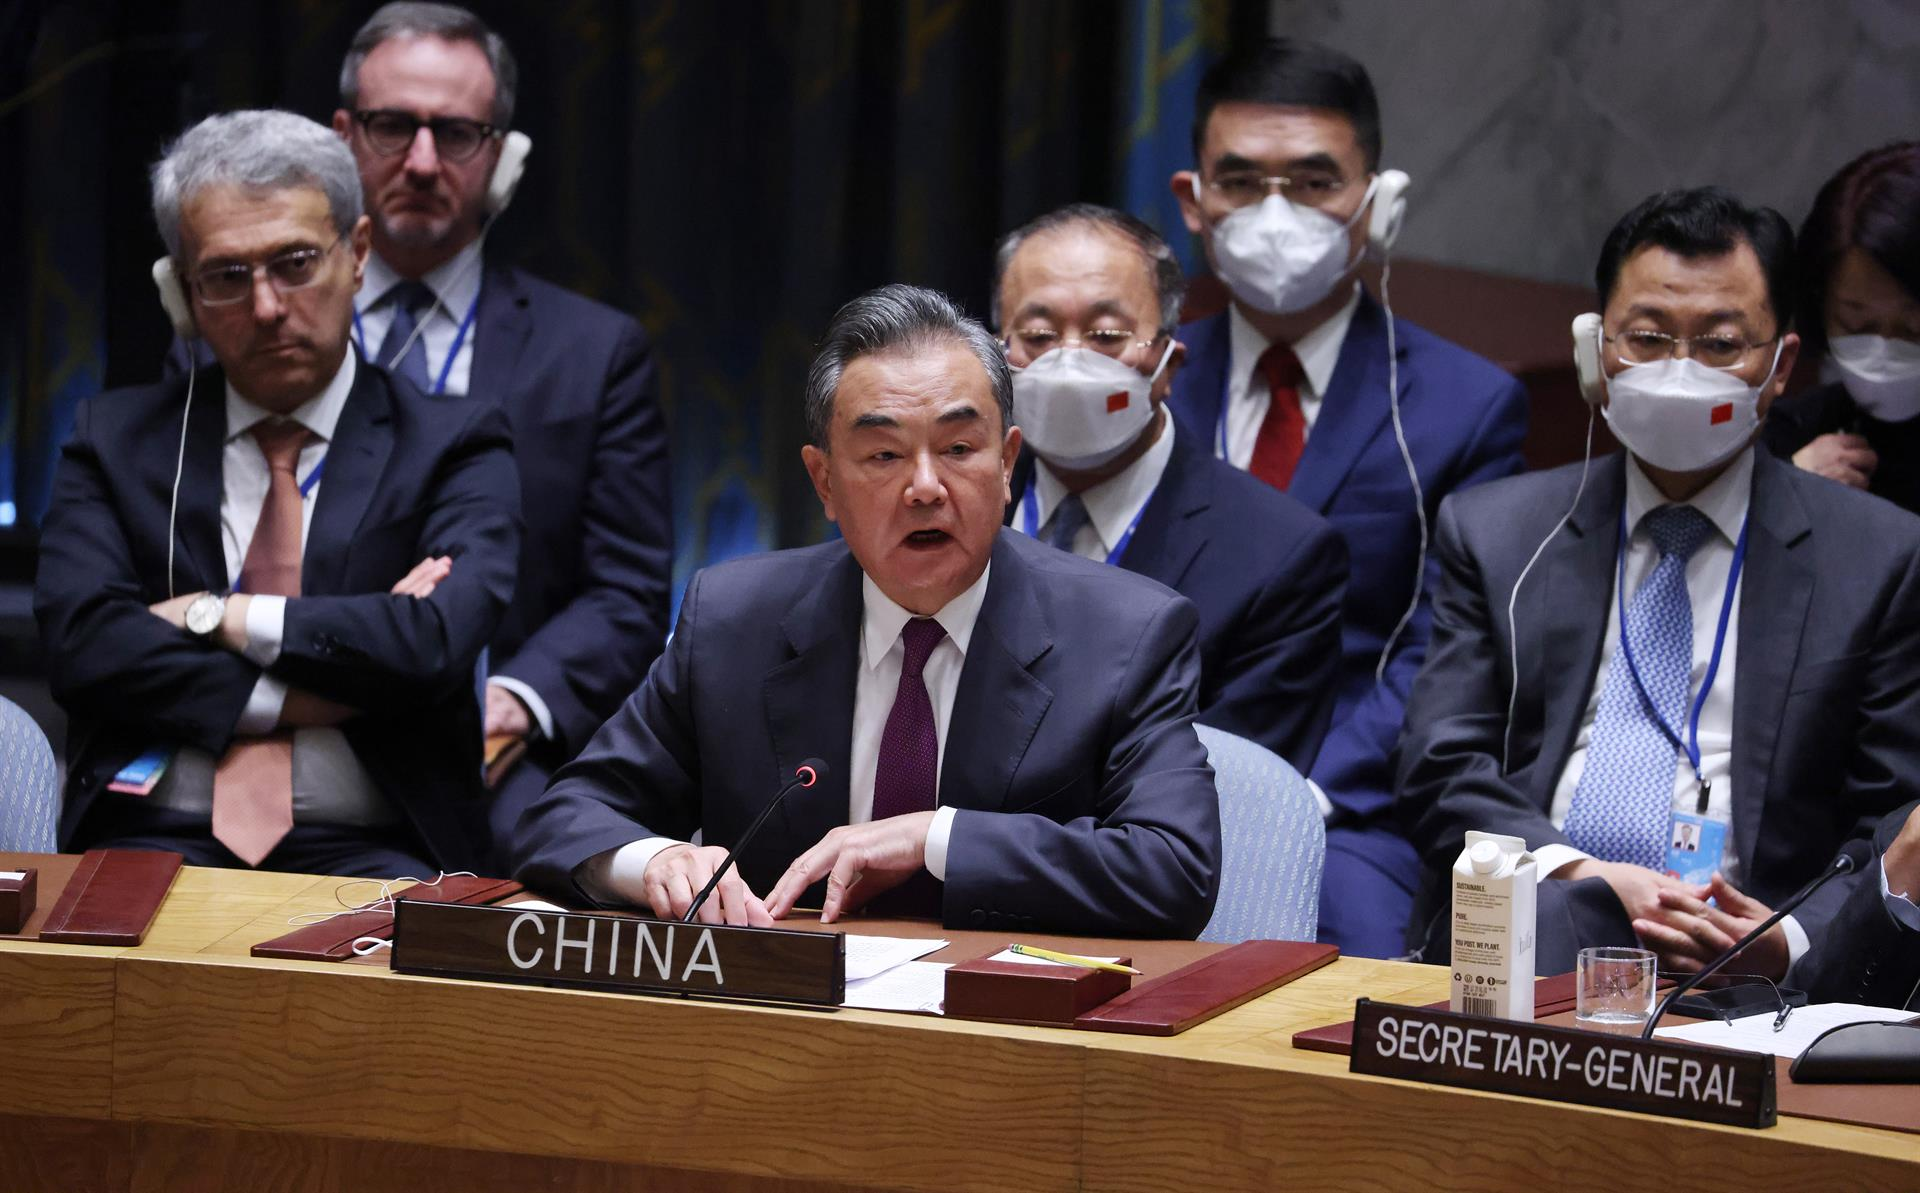 Por su parte, China ostentó la Presidencia del Consejo en mayo de 2021 y agosto de 2022. Según el Security Council Report (2021), para mayo sus prioridades fueron: